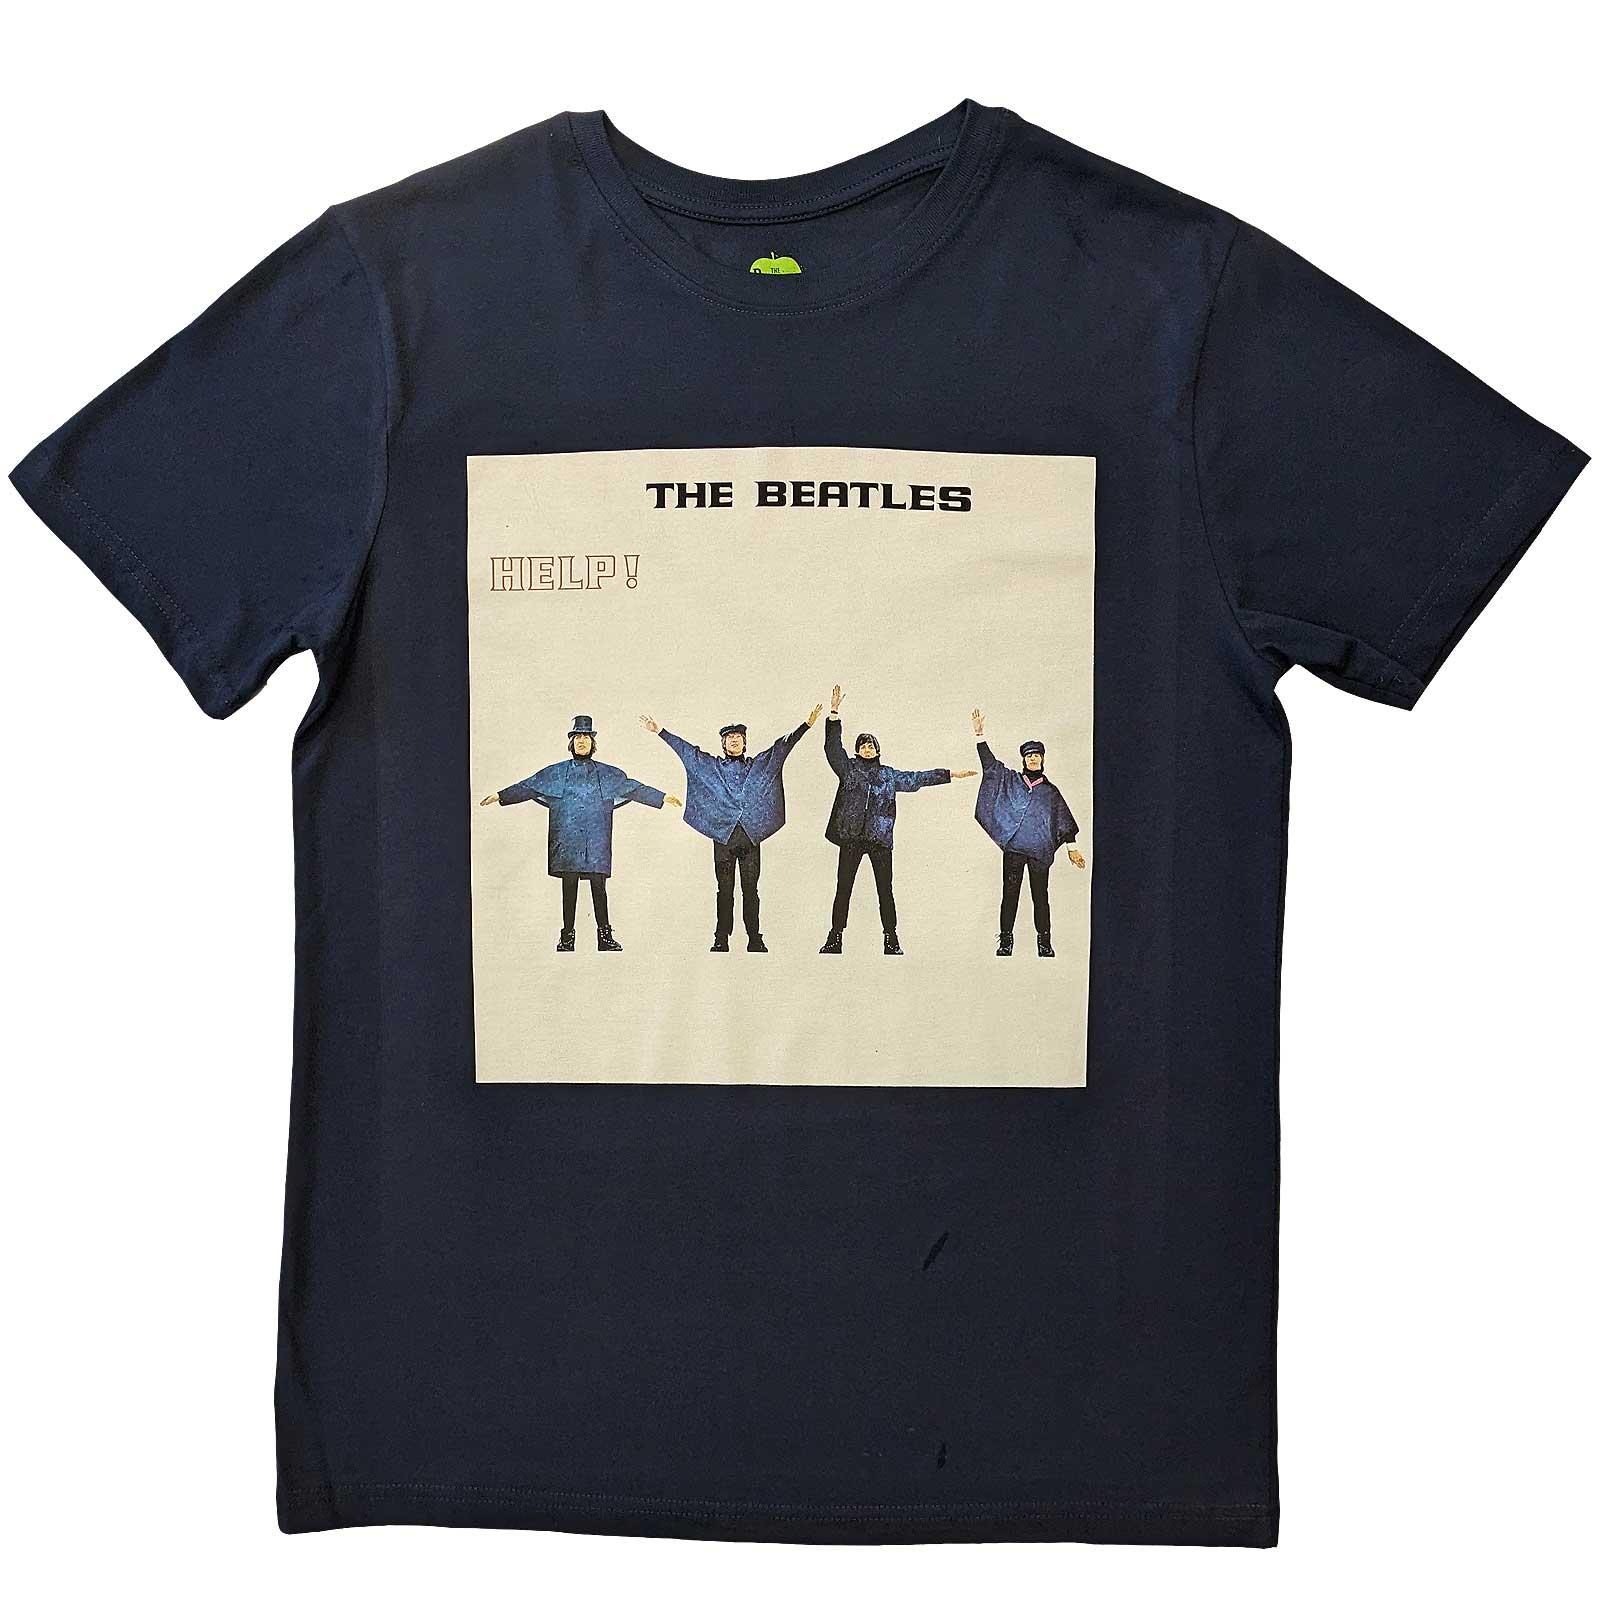 (ビートルズ) The Beatles オフィシャル商品 ユニセックス Help! アルバム Tシャツ 半袖 トップス 【海外通販】